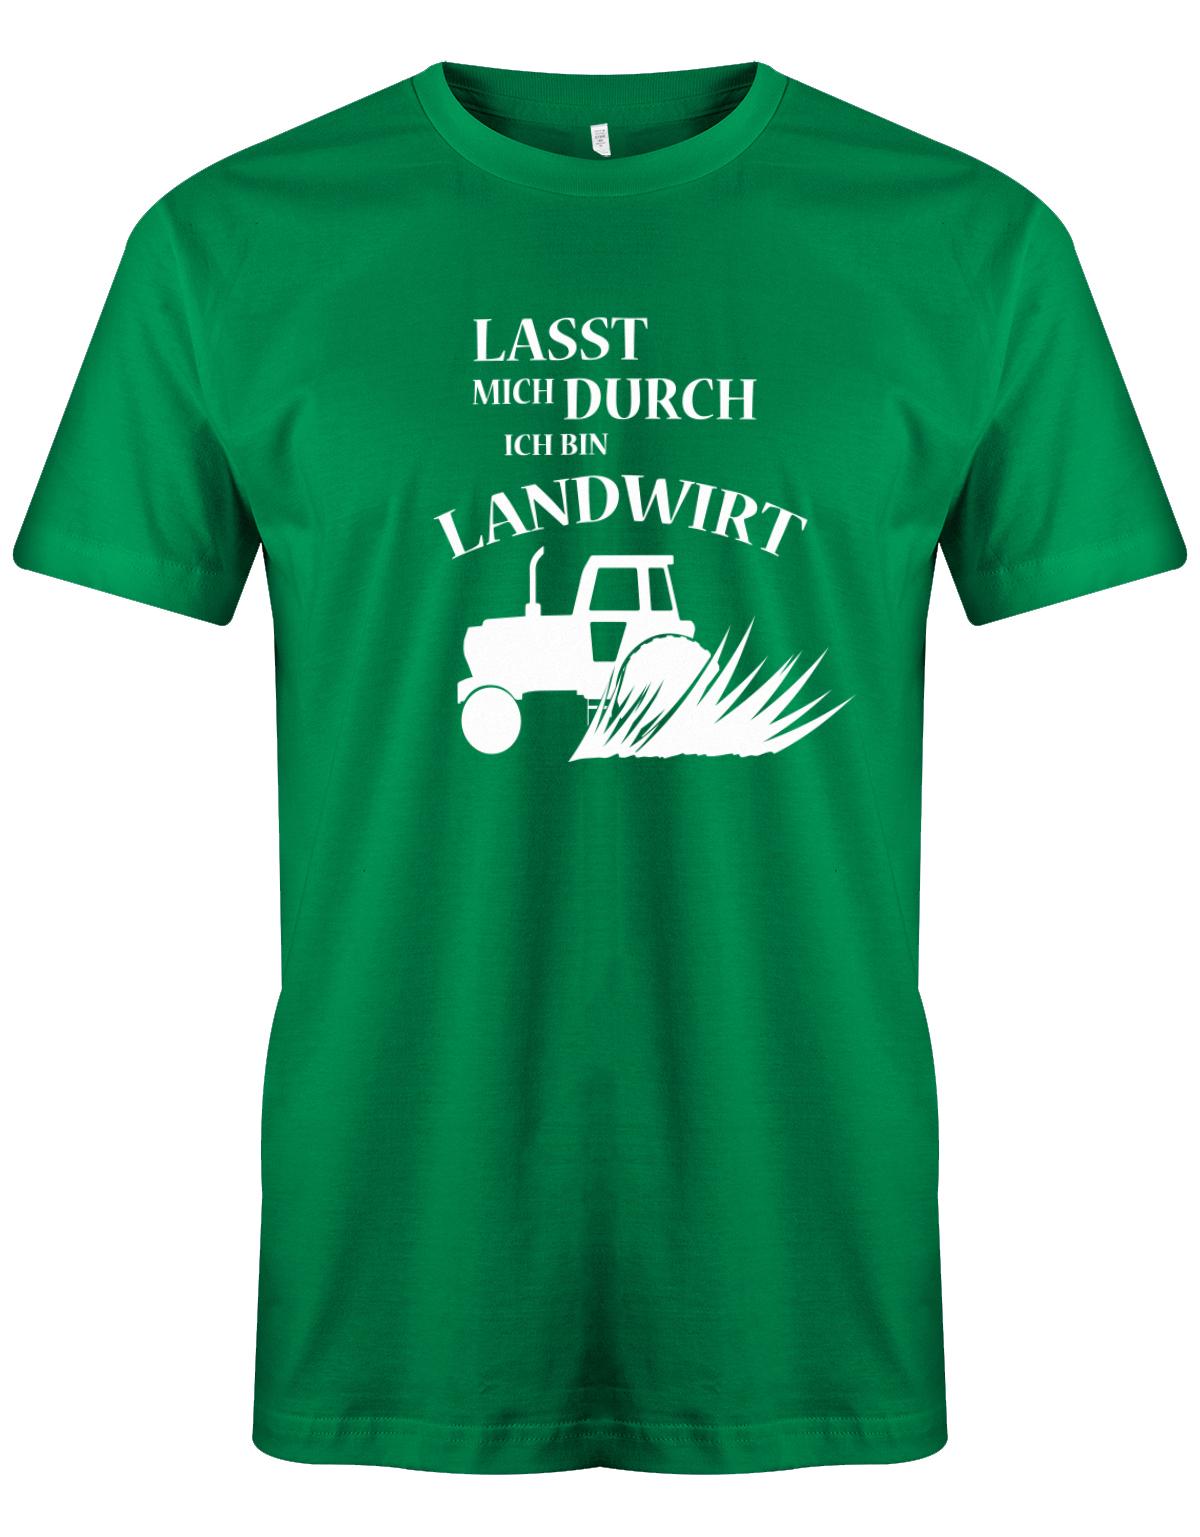 Landwirtschaft Shirt Männer - Lasst mich durch, ich bin Landwirt. Traktor Grün